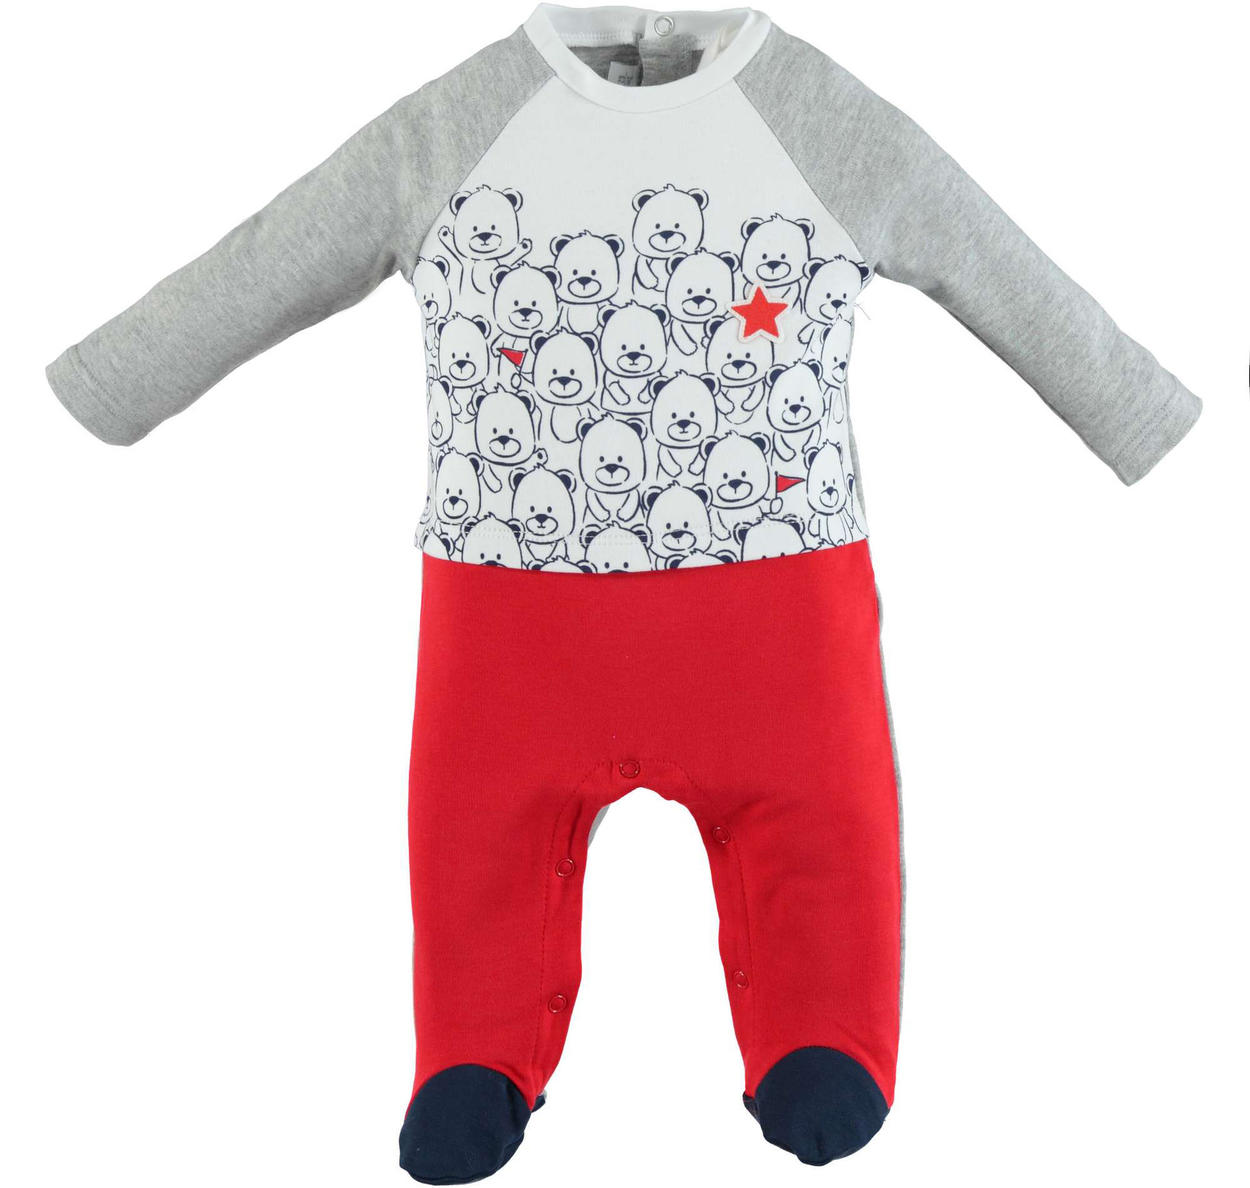 Tutina intera con piede stampa orsetti e finta ghettina bicolore per neonato  da 0 a 18 mesi iDO - Miniconf Shop